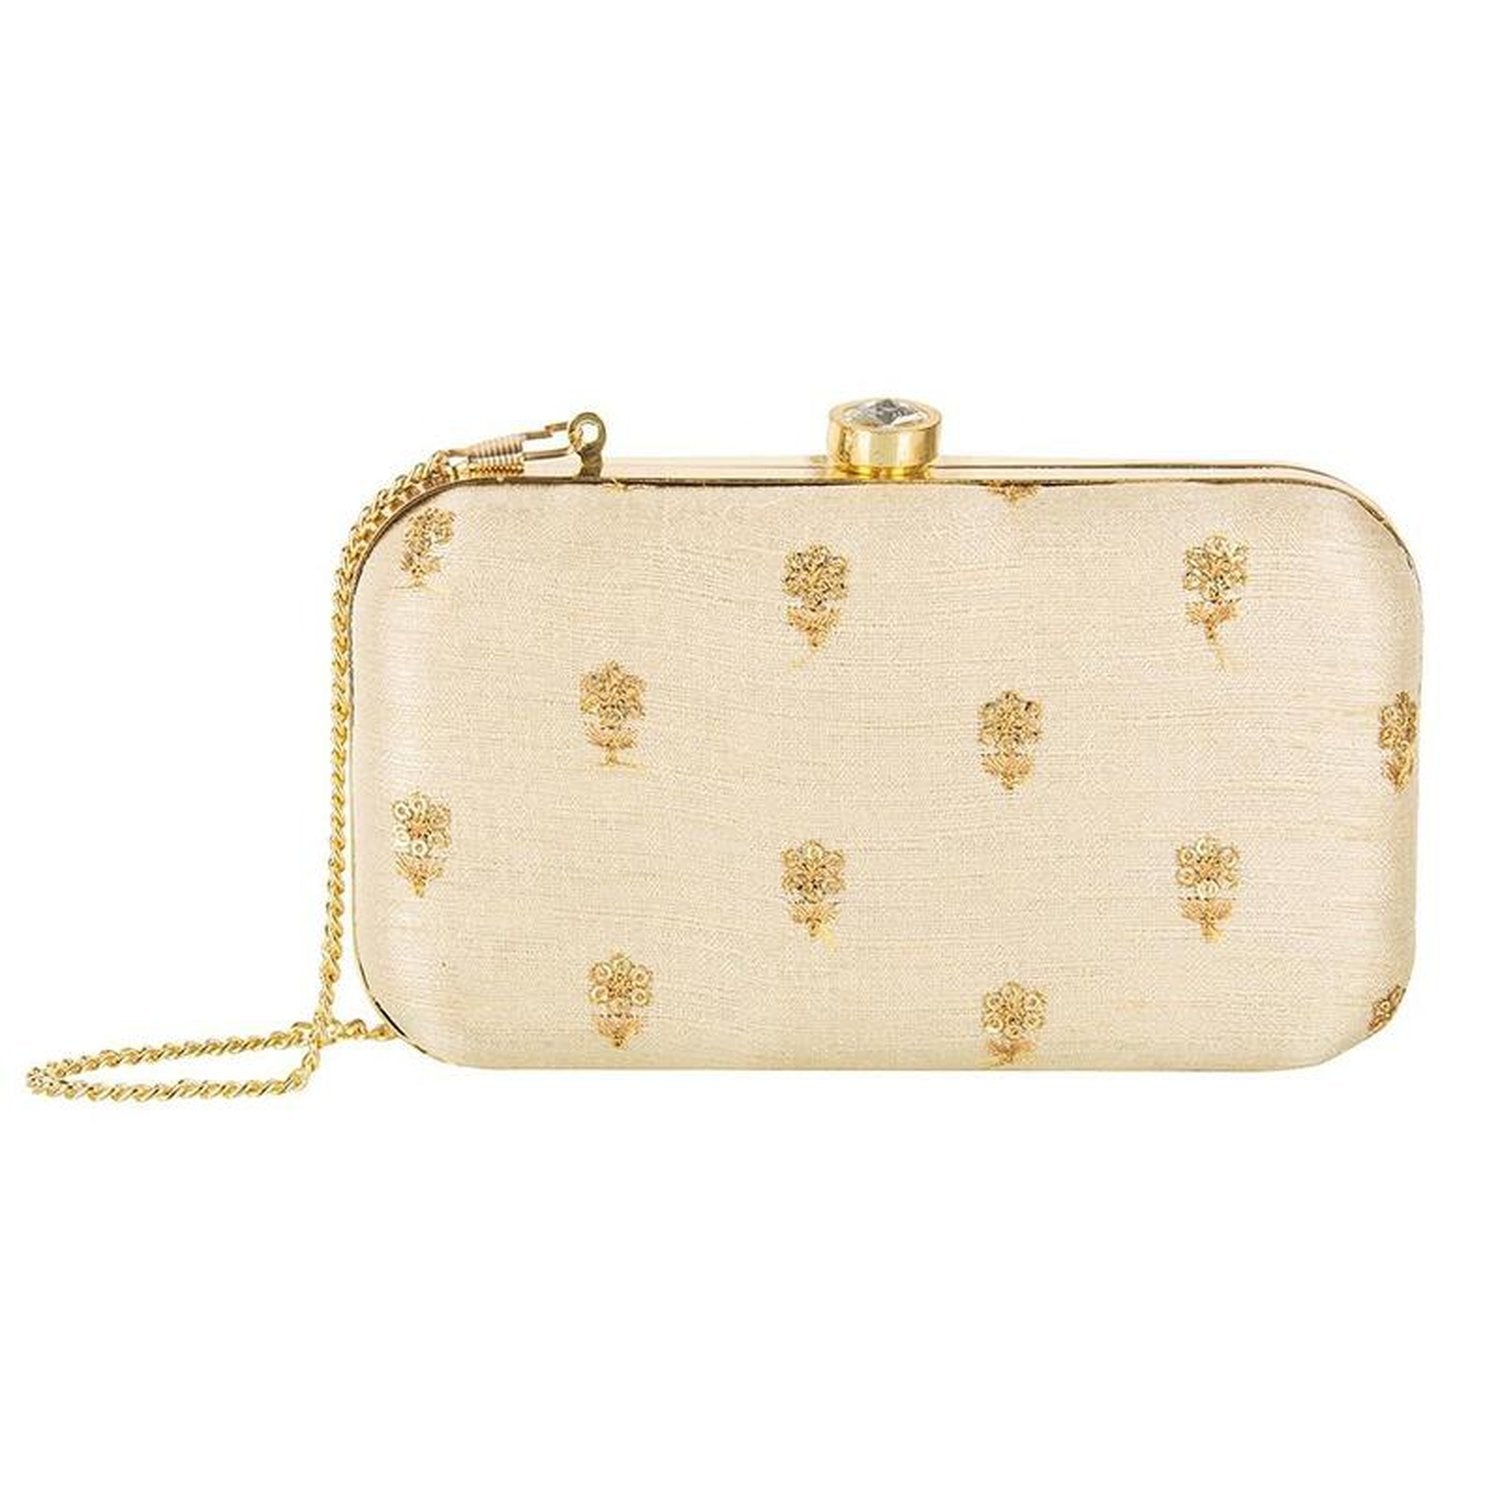 BirdinBag – Party-ready Evening Clutch Bag with Gold Rhinestone  Embellishments | Evening clutch bag, Gold rhinestone, Clutch bag